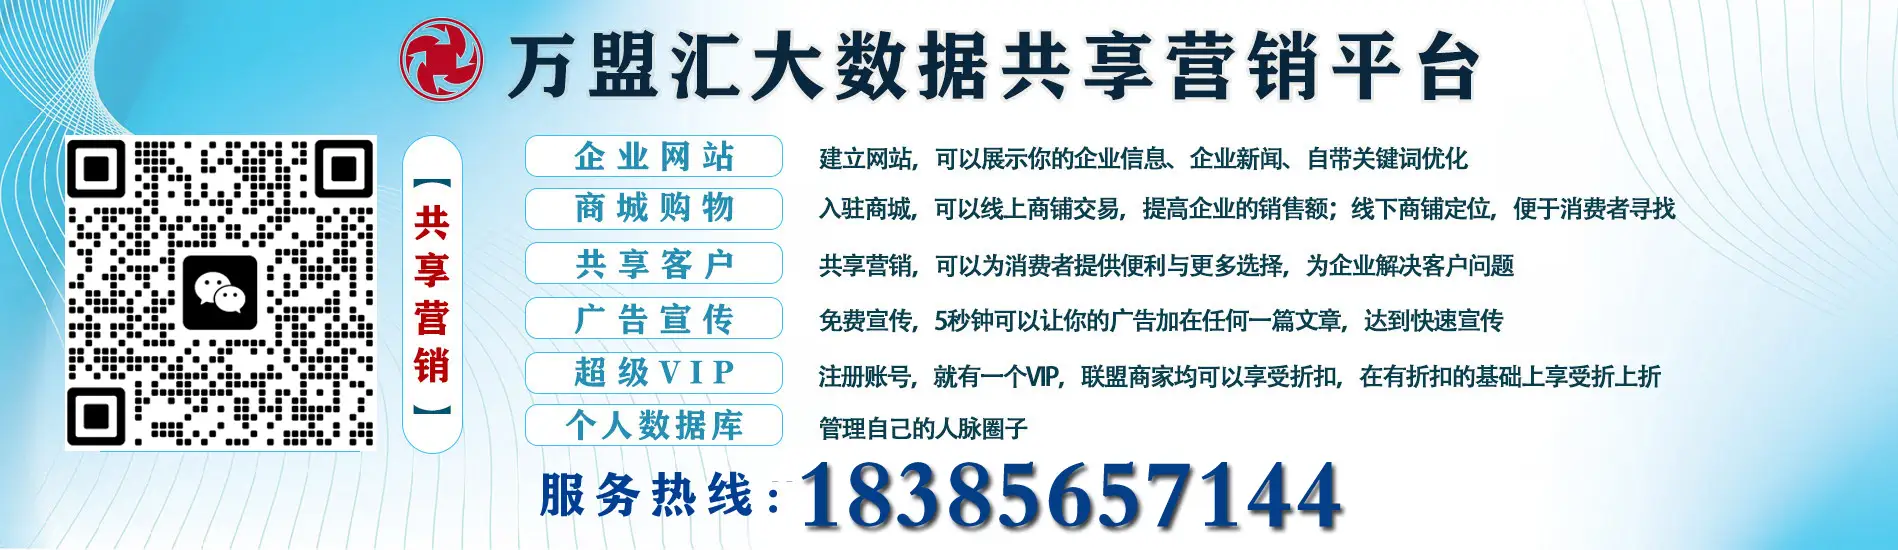 贵州企速融数据科技有限公司黔西县分公司